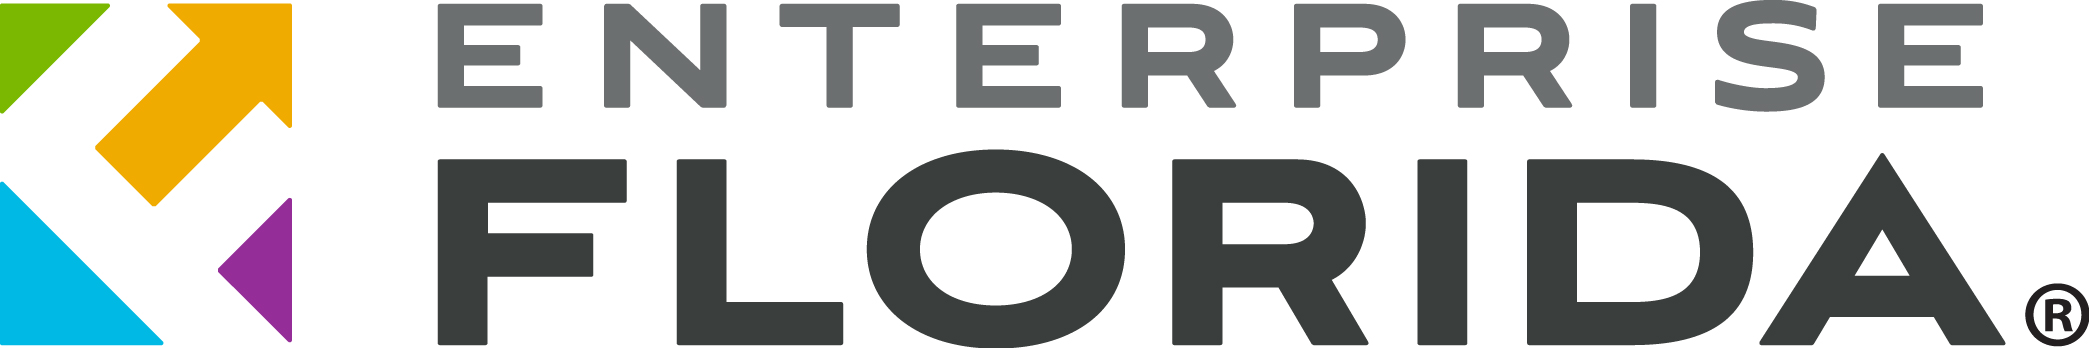 Enterprise Florida (EFI) Logo